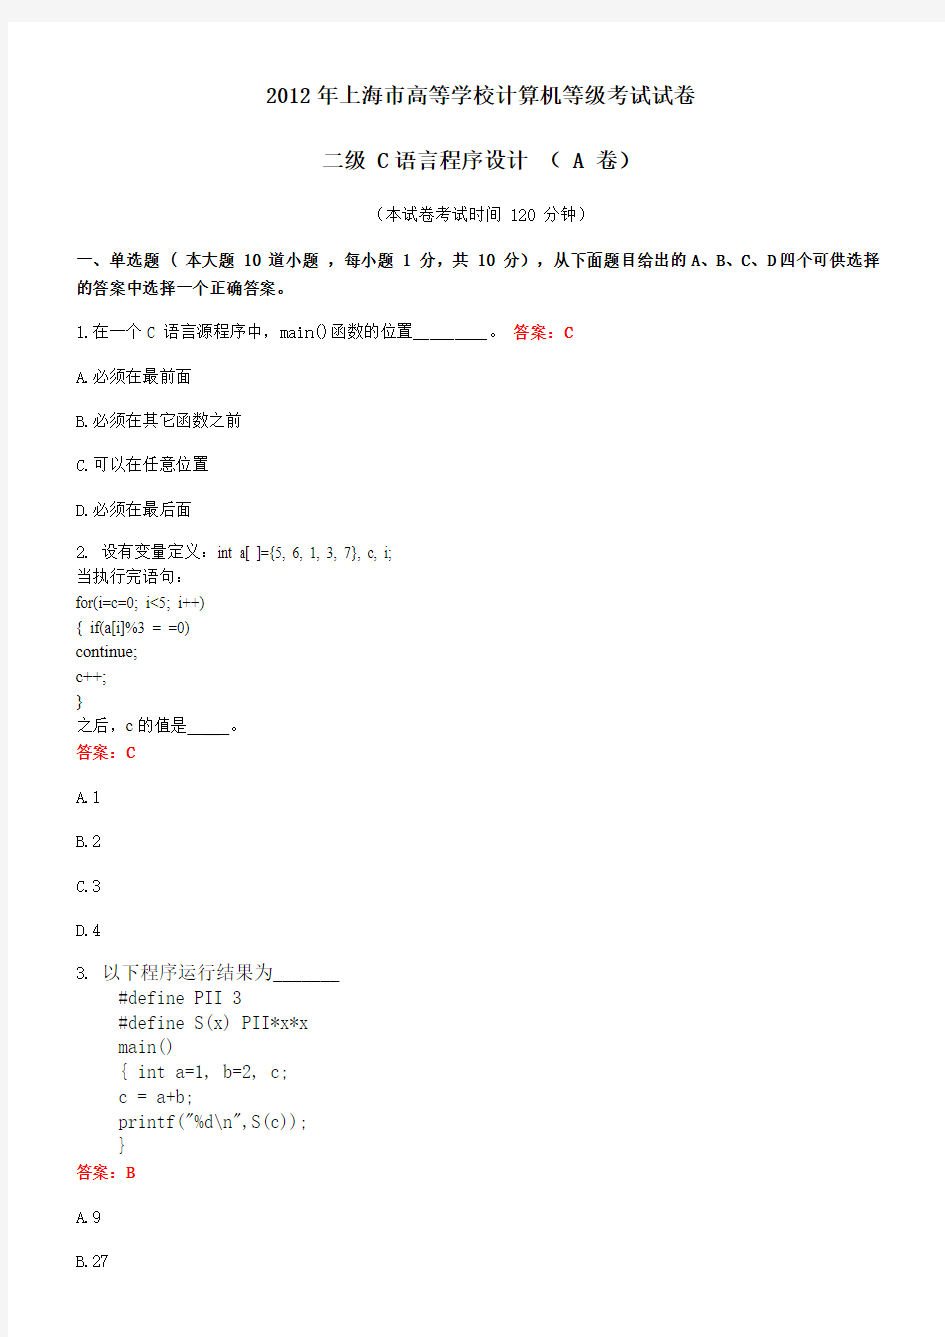 2012年上海市高等学校计算机等级考试试卷二级C语言程序设计(-A-卷)